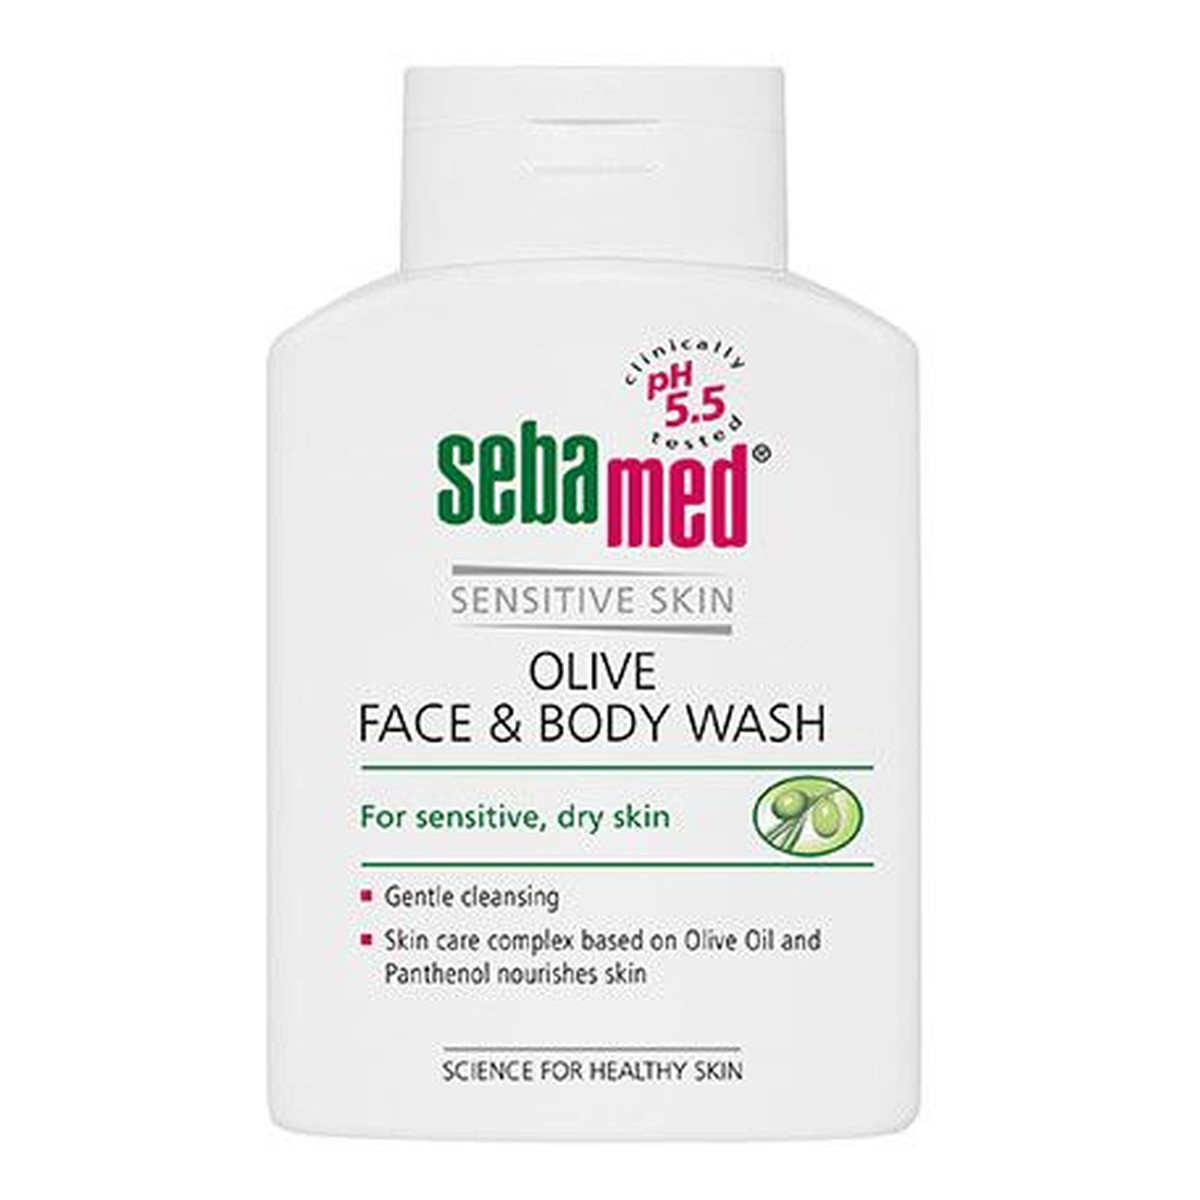 Sebamed Sensitive Skin oliwkowa emulsja do mycia twarzy i ciała 20ml